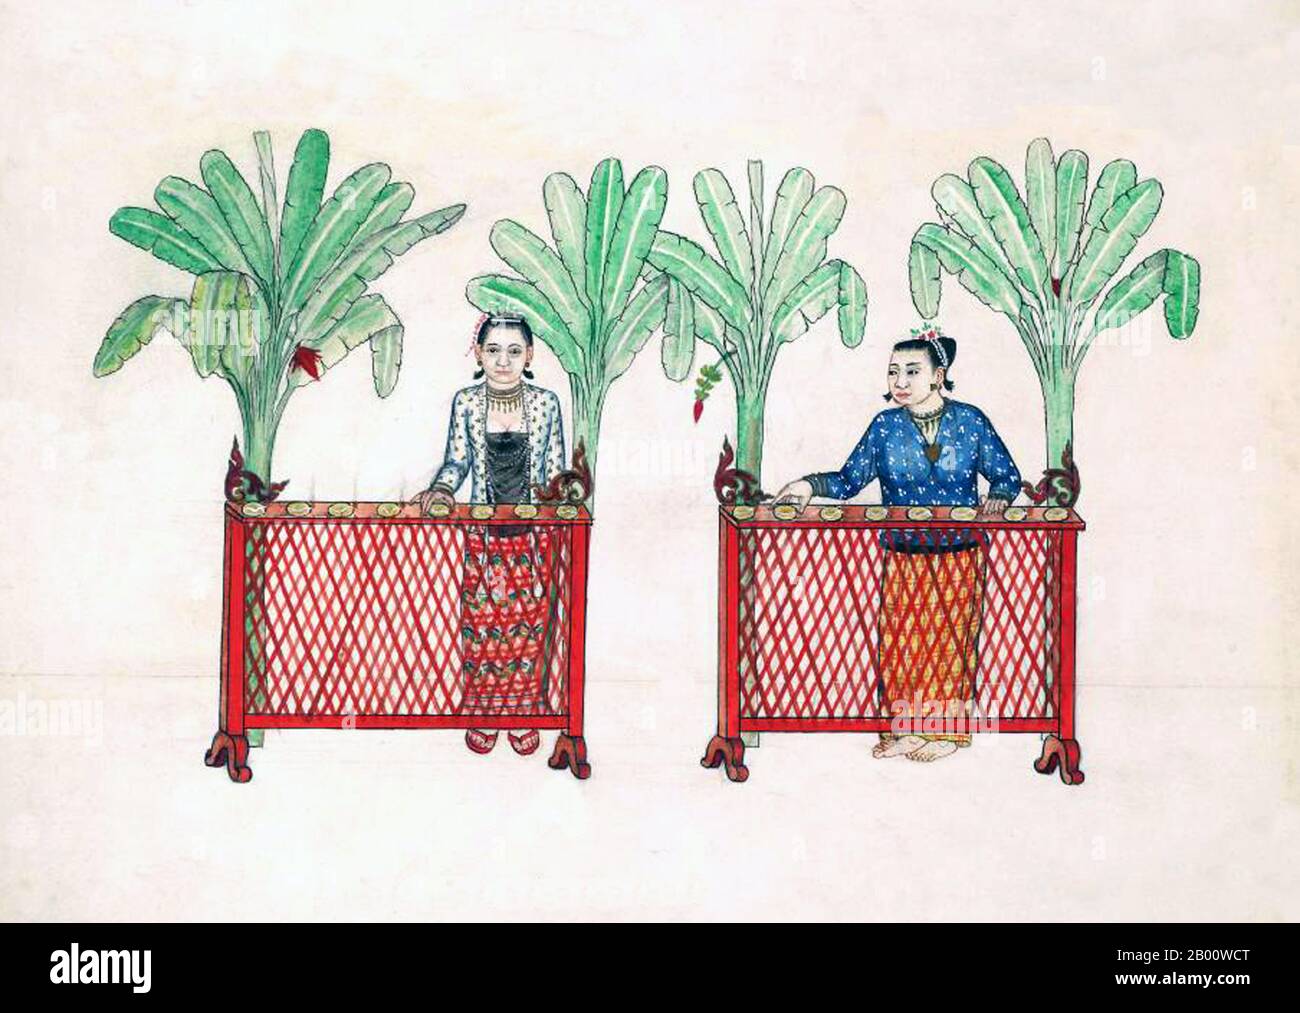 Birma/Myanmar: Frauen veranstalten spezielle Snacks für das Festival am Silvesterabend. Dieses Gemälde, von einem unbekannten burmesischen Künstler, ist aus einem Aquarell Skizzenalbum von c.1897, das Illustrationen von buddhistischen Mönchen, Buddha, Klöster, Krematationen und häusliche Szenen enthält. Die Legende schreibt die erste buddhistische Lehre in Burma auf 228 v. Chr. zurück, als Sohn Uttar Sthavira, einer der königlichen Mönche von Kaiser Ashoka dem Großen von Indien, mit anderen Mönchen und heiligen Texten ins Land kam. Allerdings begann die Ära des Buddhismus wirklich im 11. Jahrhundert, nachdem König Anawrahta von Pagan (Bagan) konvertierte. Stockfoto